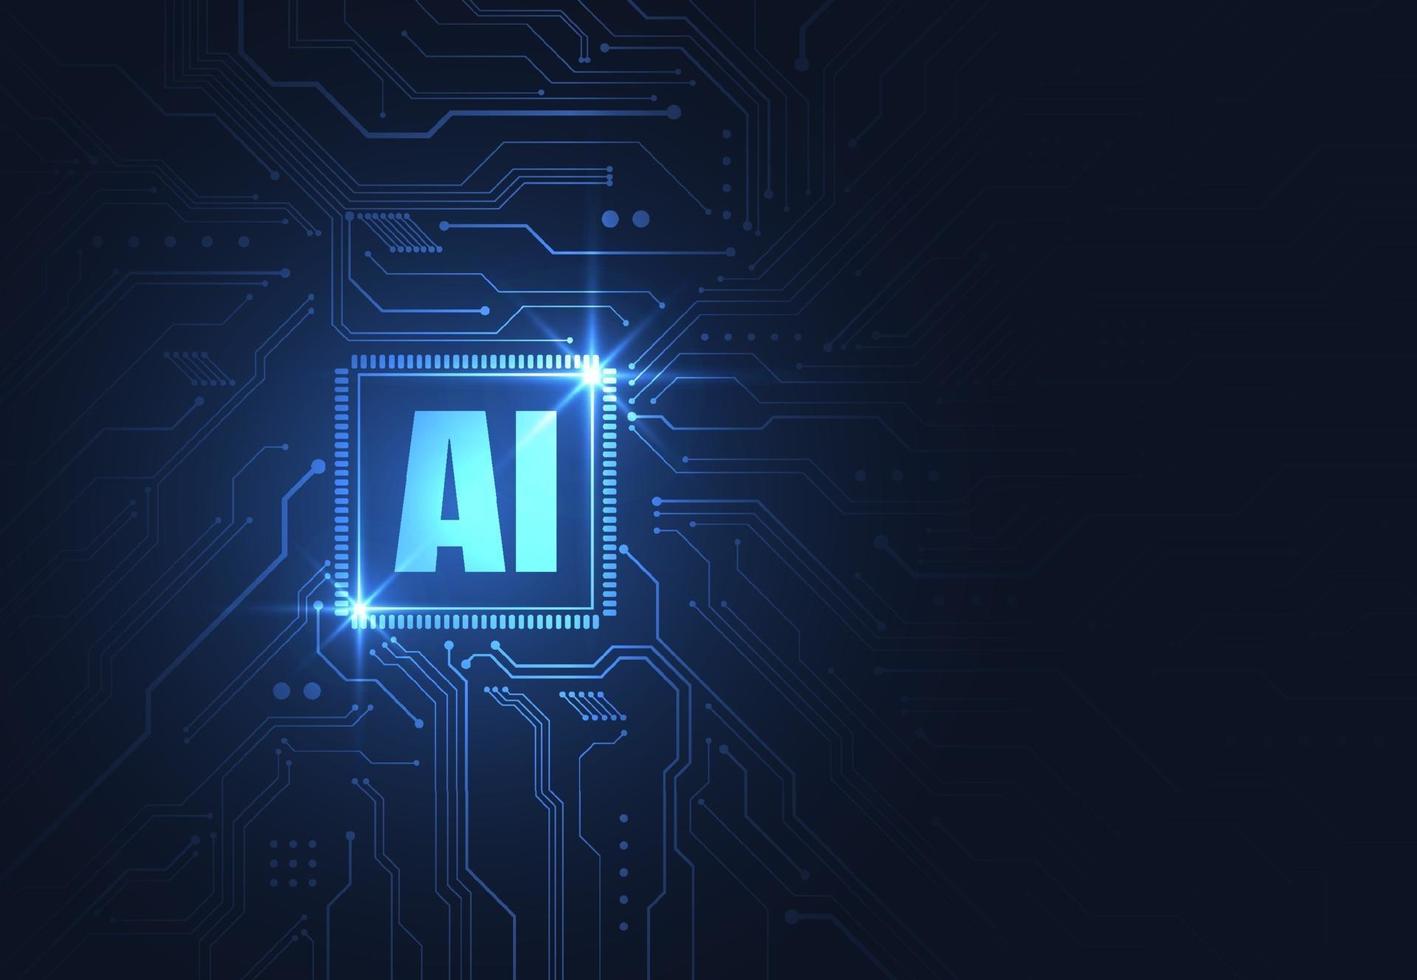 chipset de inteligencia artificial en placa de circuito en ilustraciones de tecnología de concepto futurista para web, banner, tarjeta, portada. ilustración vectorial vector